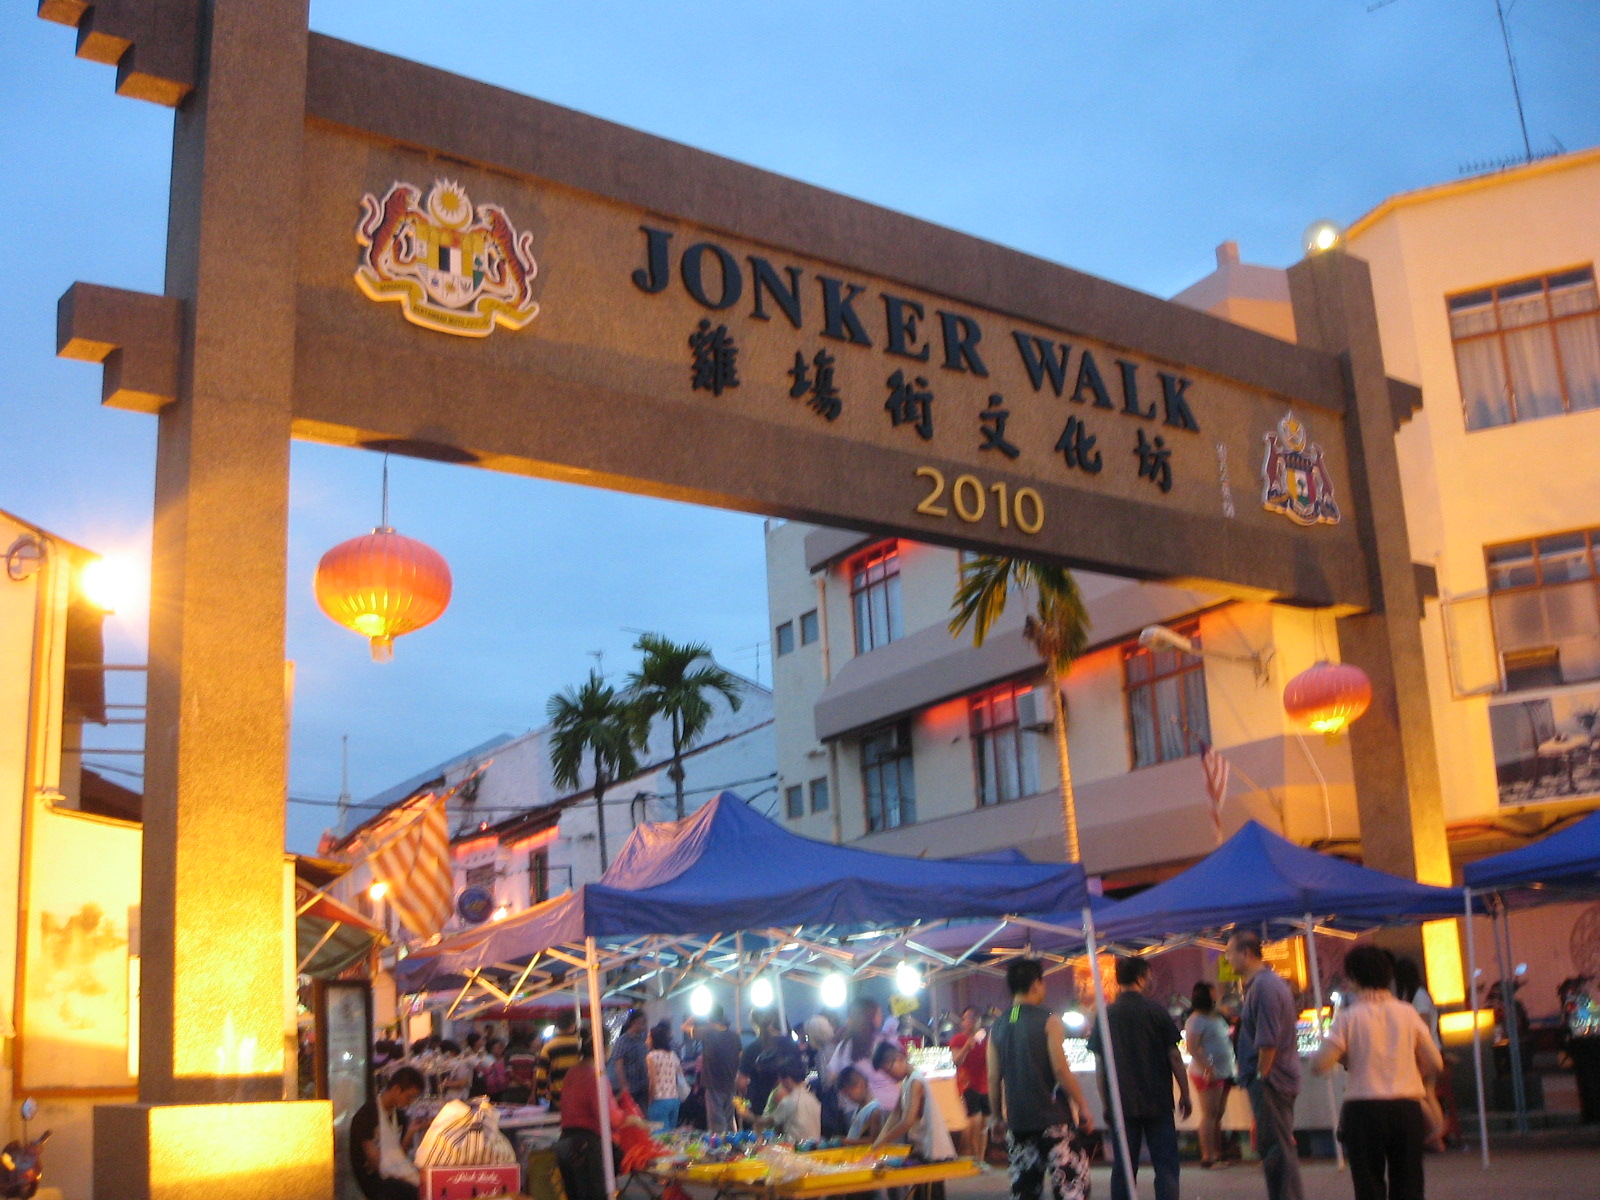 Visit Malaysia: Smoking ban in Jonker Walk and Jalan Kota